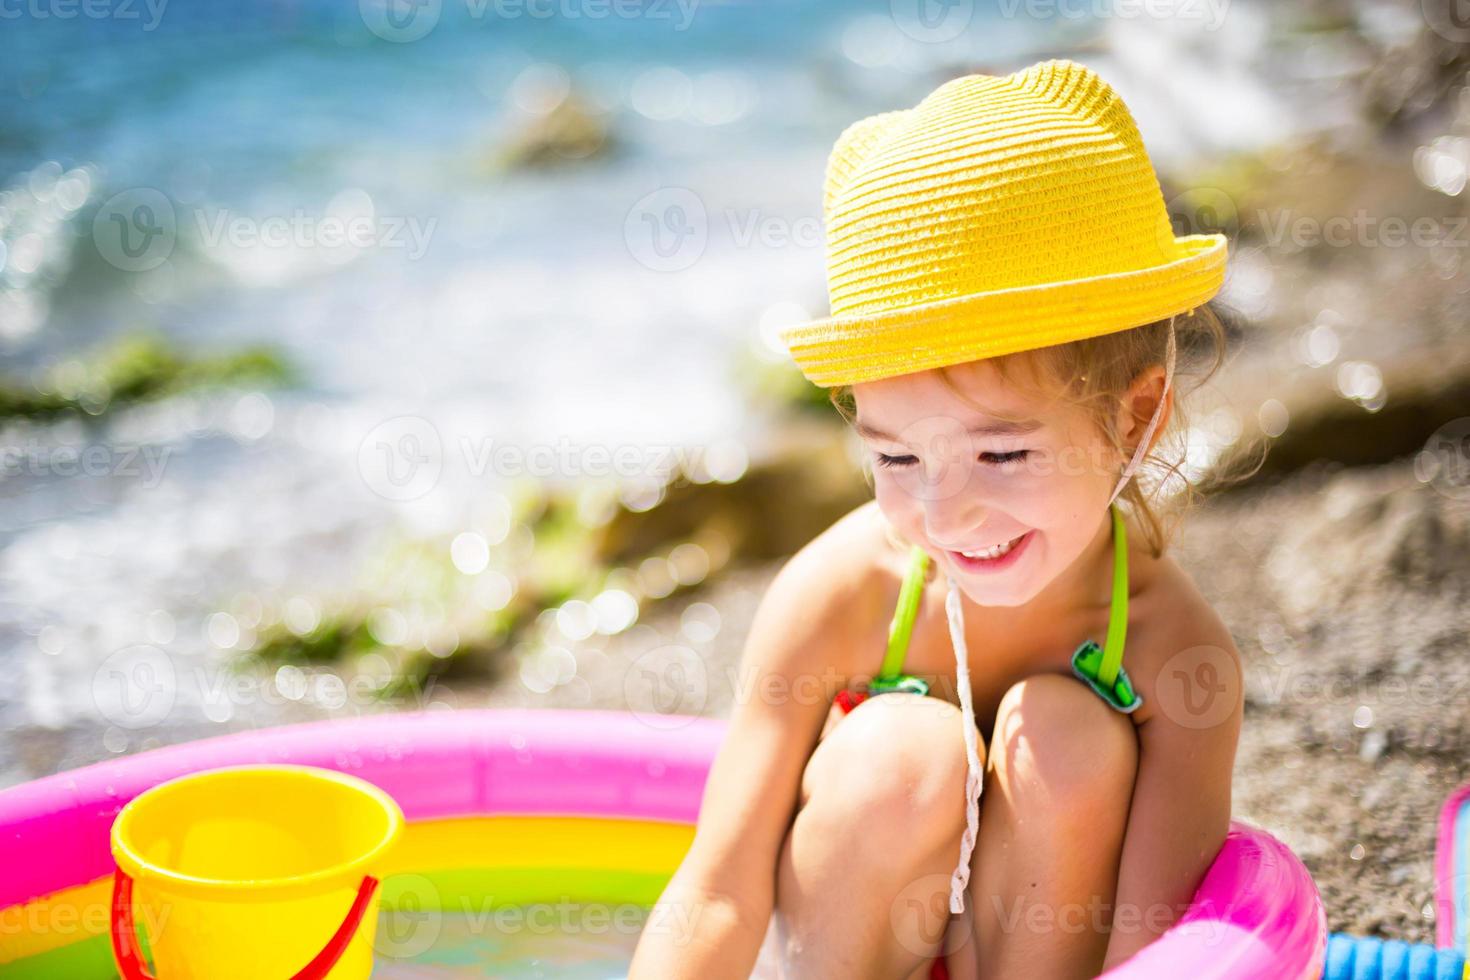 garota de chapéu de palha amarelo brinca com o vento, água e um dispensador de água em uma piscina inflável na praia. produtos indeléveis para proteger a pele das crianças do sol, queimaduras solares. resort no mar. foto